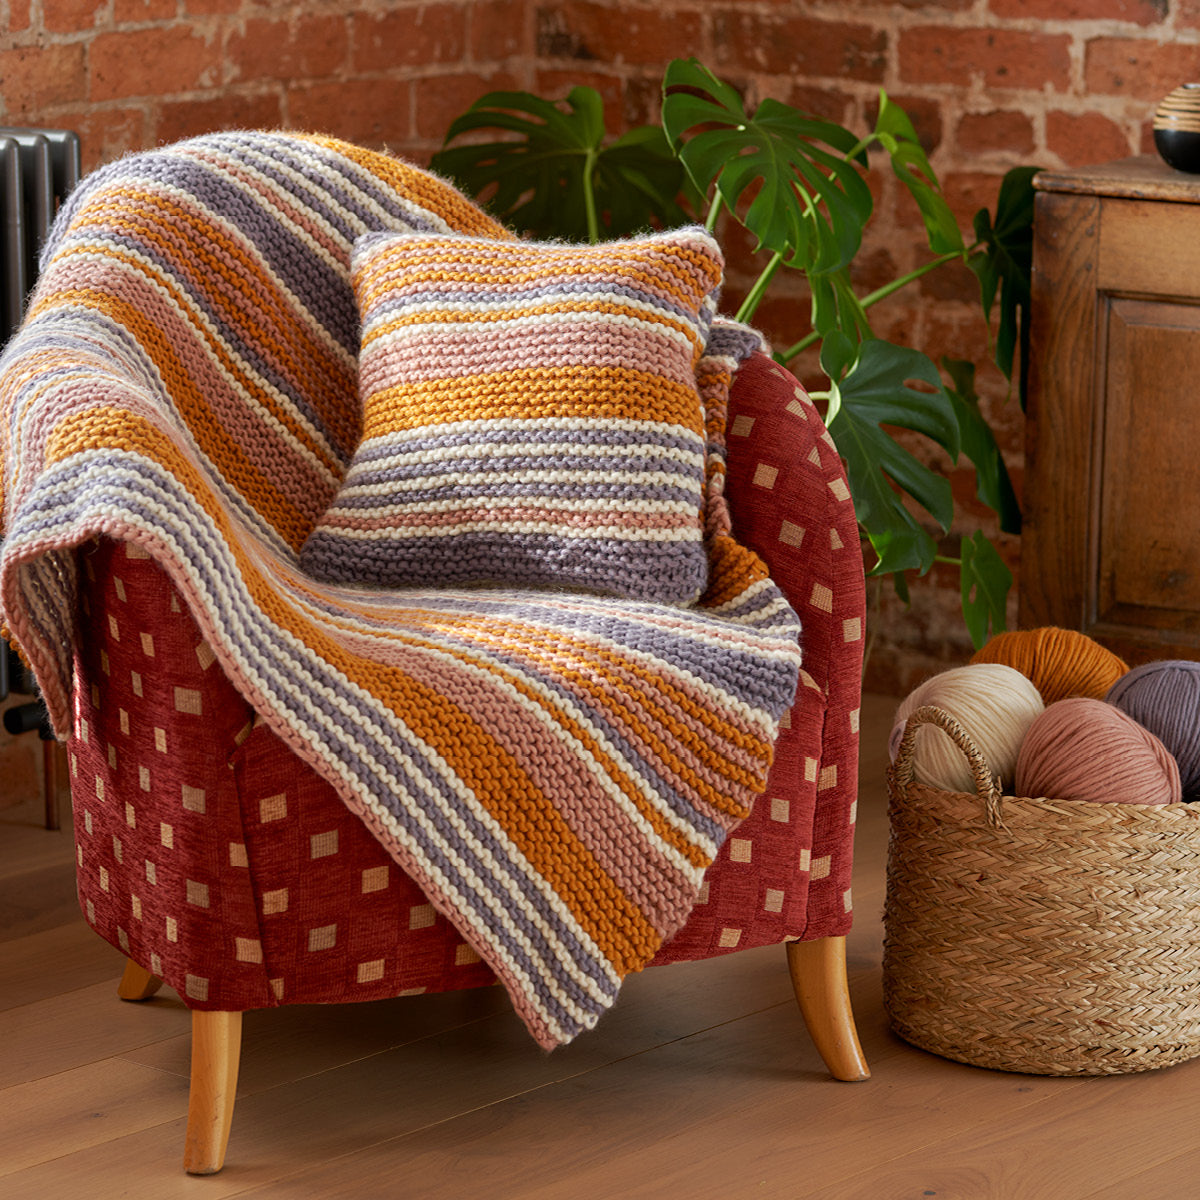 Zuma Blanket and Cushion Knitting Pattern (PDF Download)